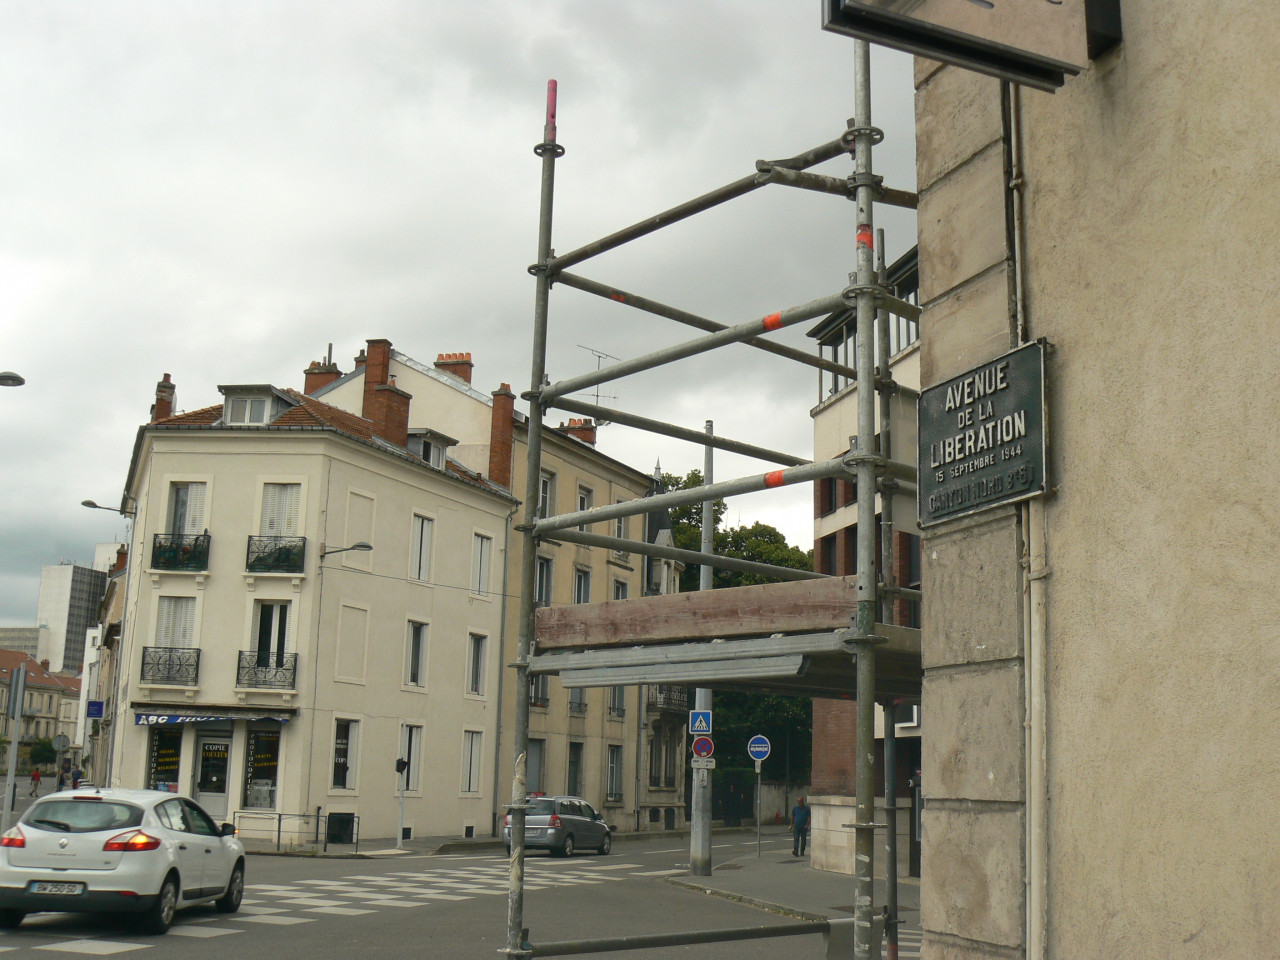 Pohled do ulice se zruenou trat, vlevo je dal ulice- Rue darmee Paton